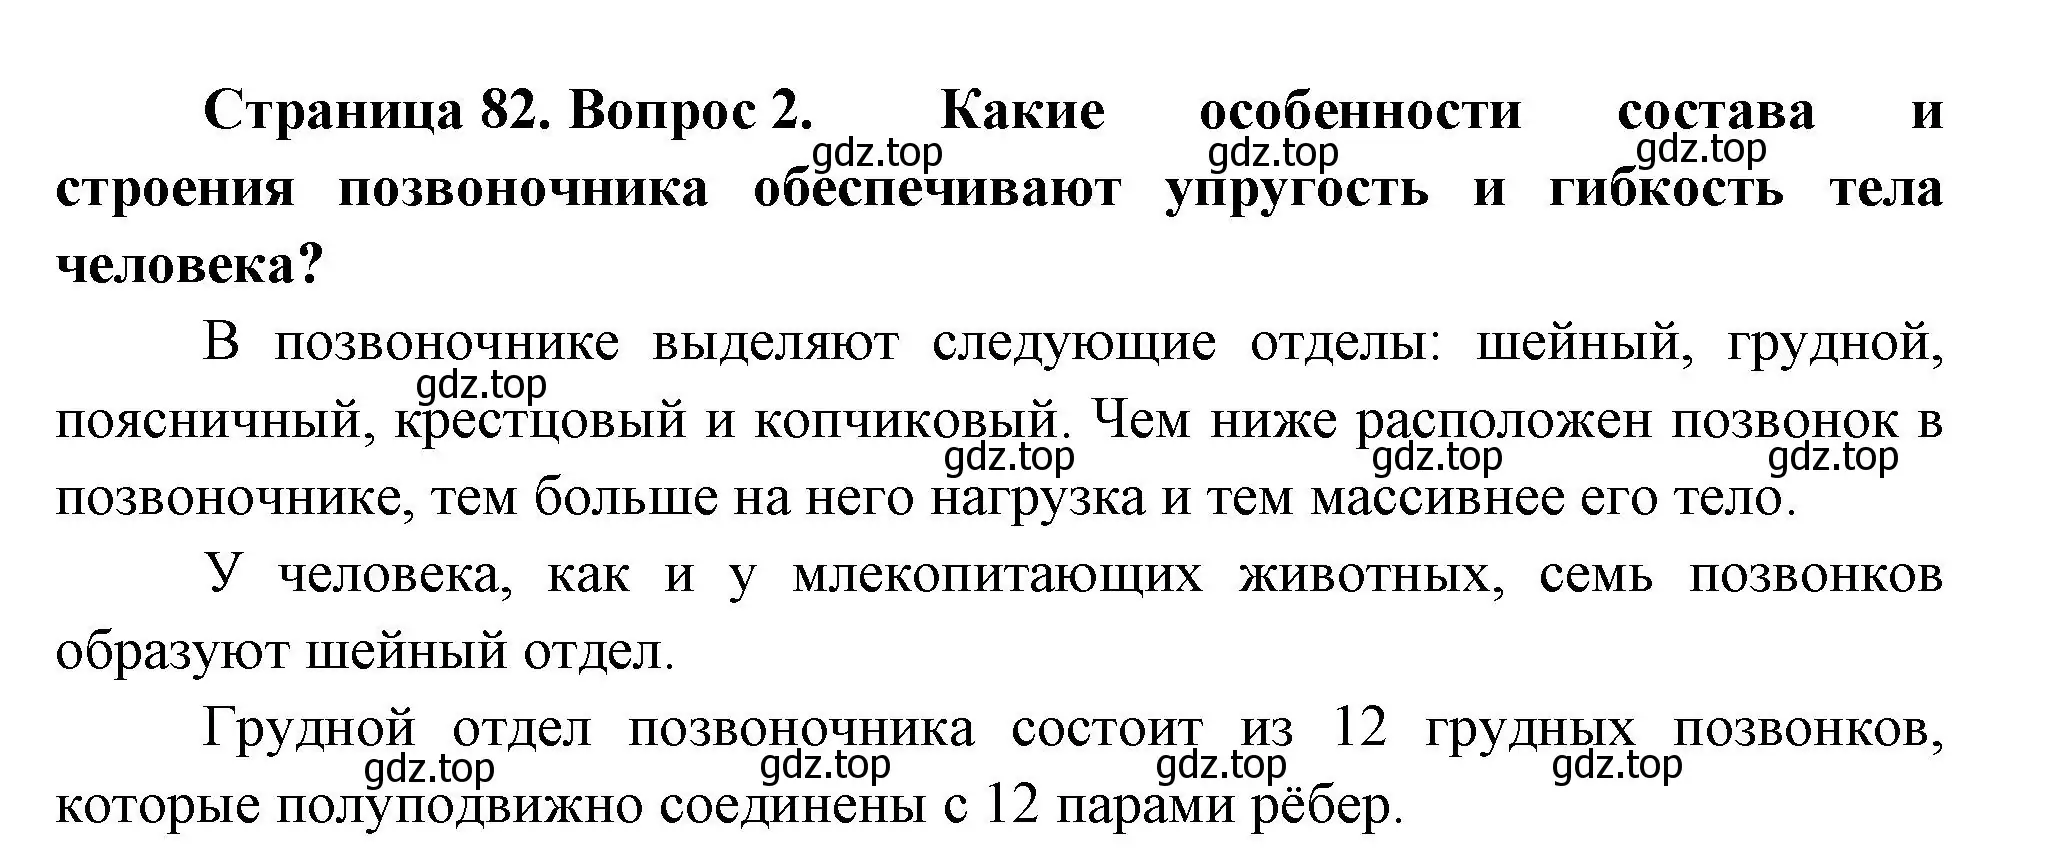 Решение номер 2 (страница 82) гдз по биологии 9 класс Пасечник, Каменский, учебник